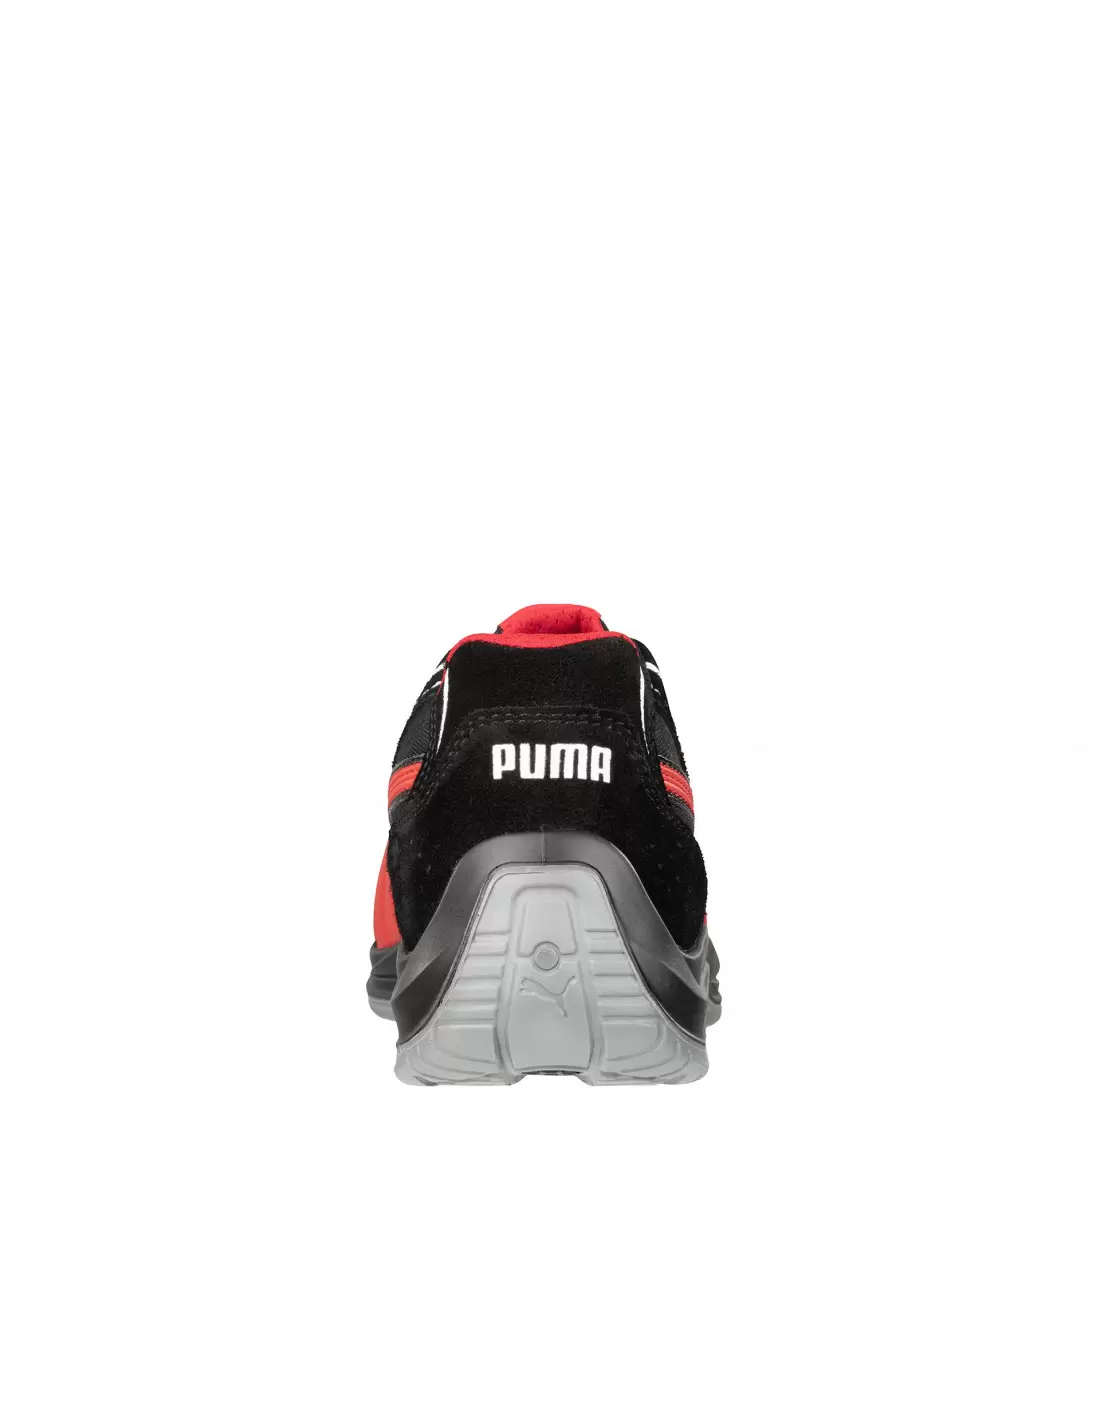 PUMA Safety Touring Black Suede Low Chaussures de sécurité S3 ESD SRC avec  embout en fibre de verre Chaussures de protection pour le travail en  moteur, aspect sport, Noir , 44 EU 